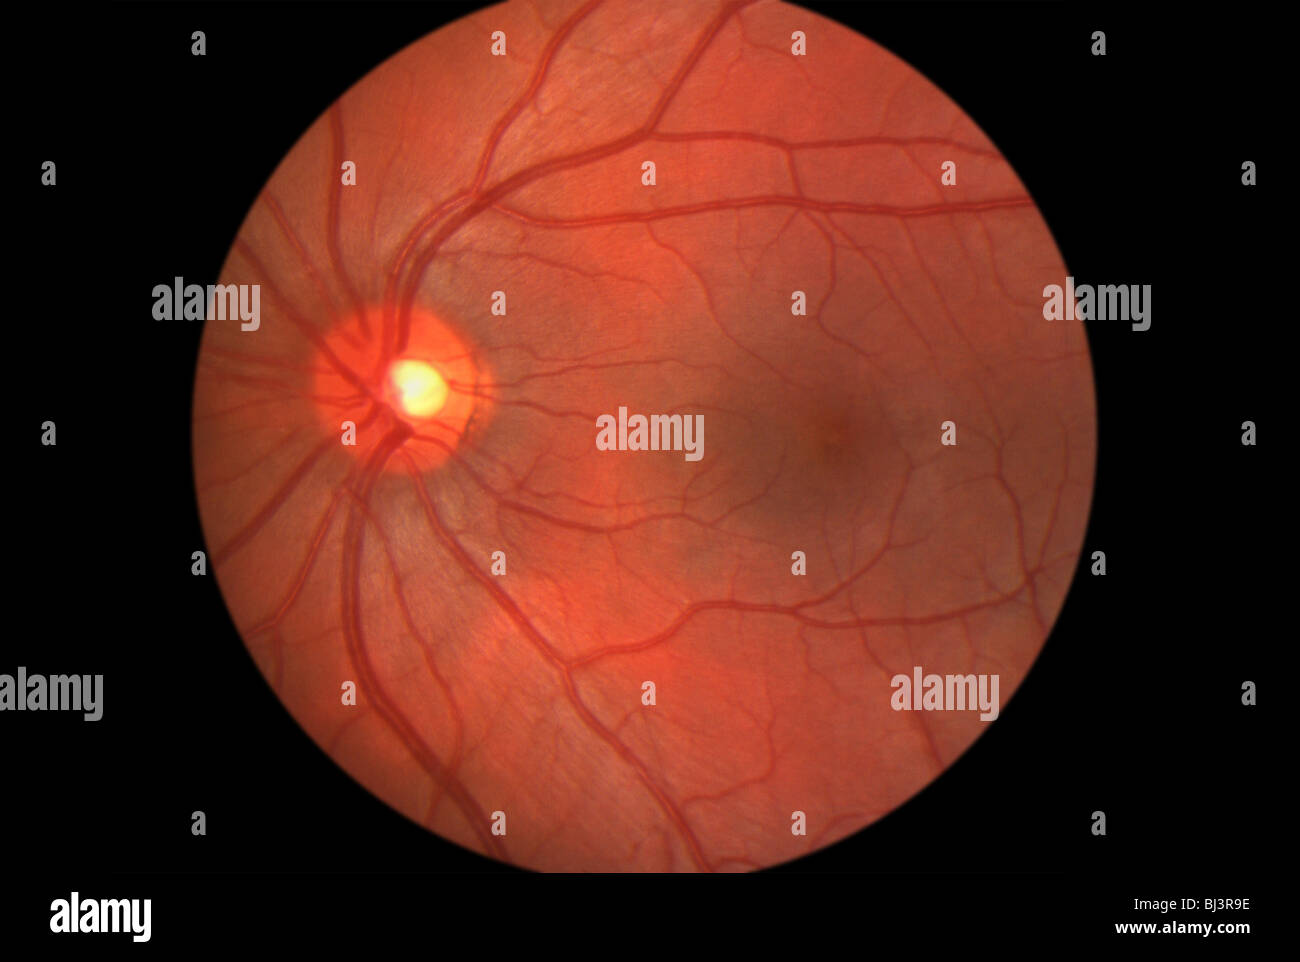 Immagine medica all'interno dell'occhio umano che mostra la retina Foto  stock - Alamy